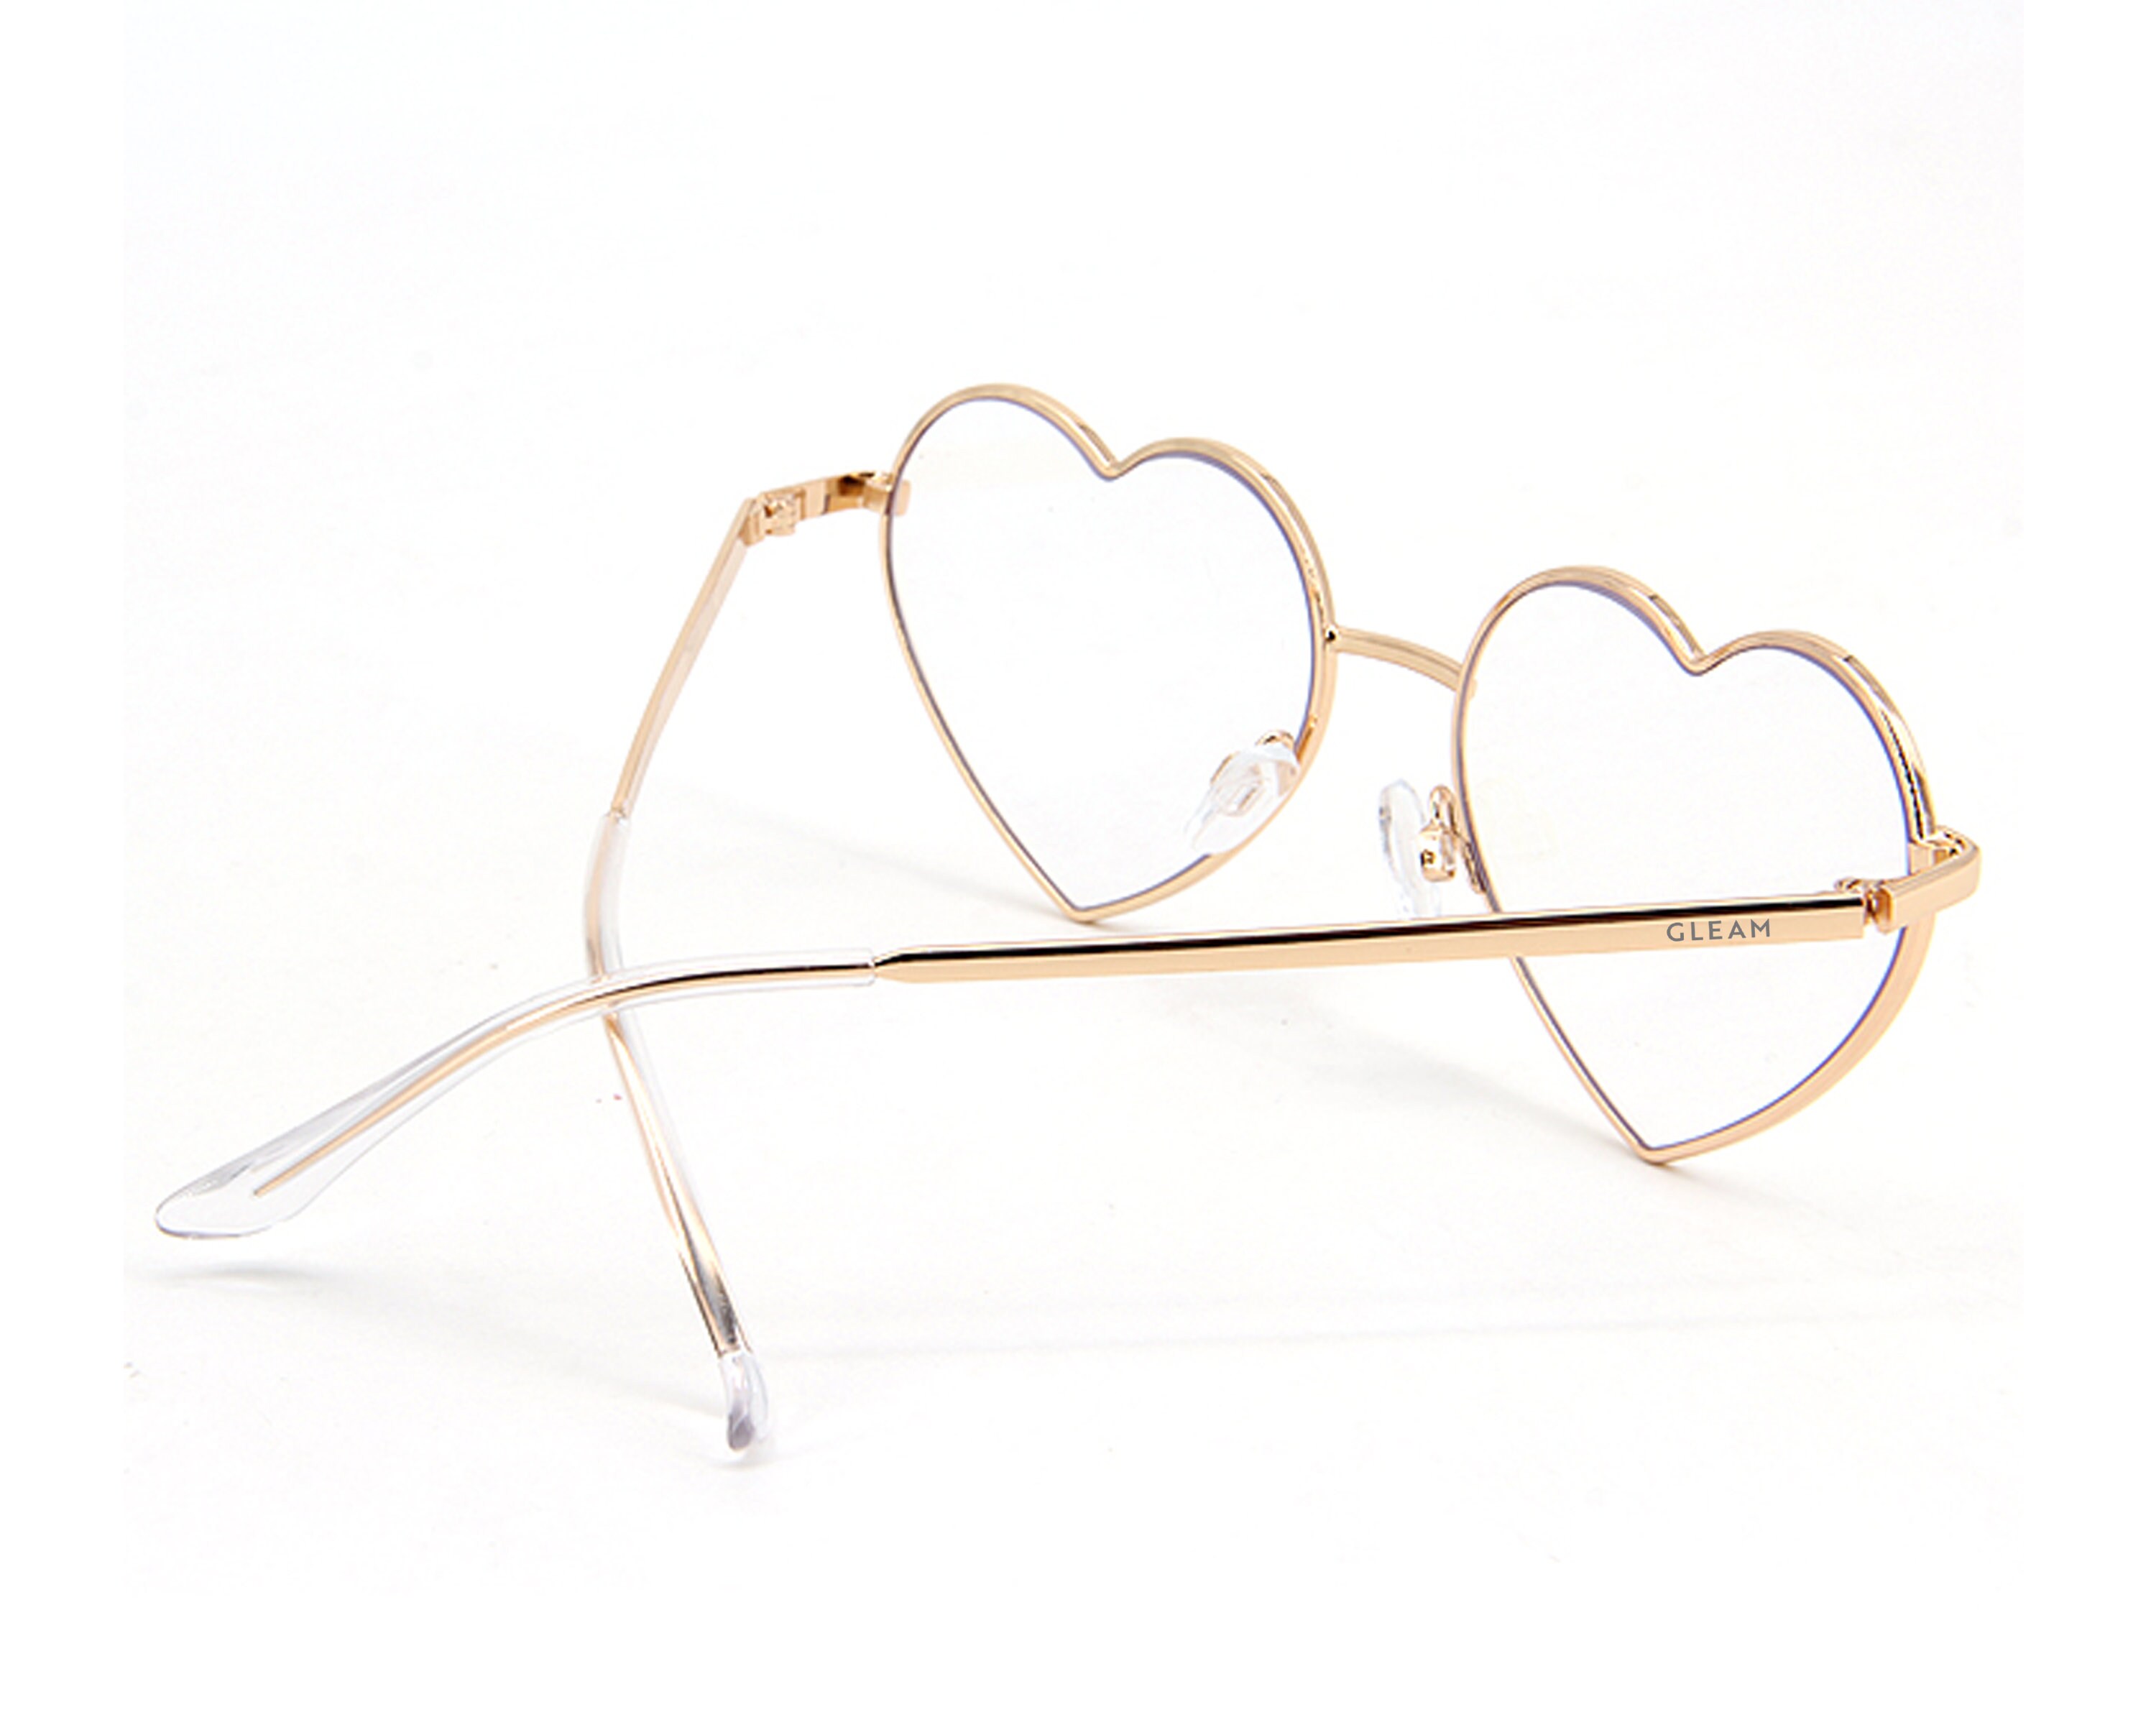 Blue light Blocker Heart Shaped love glasses – Love Glasses Revolution